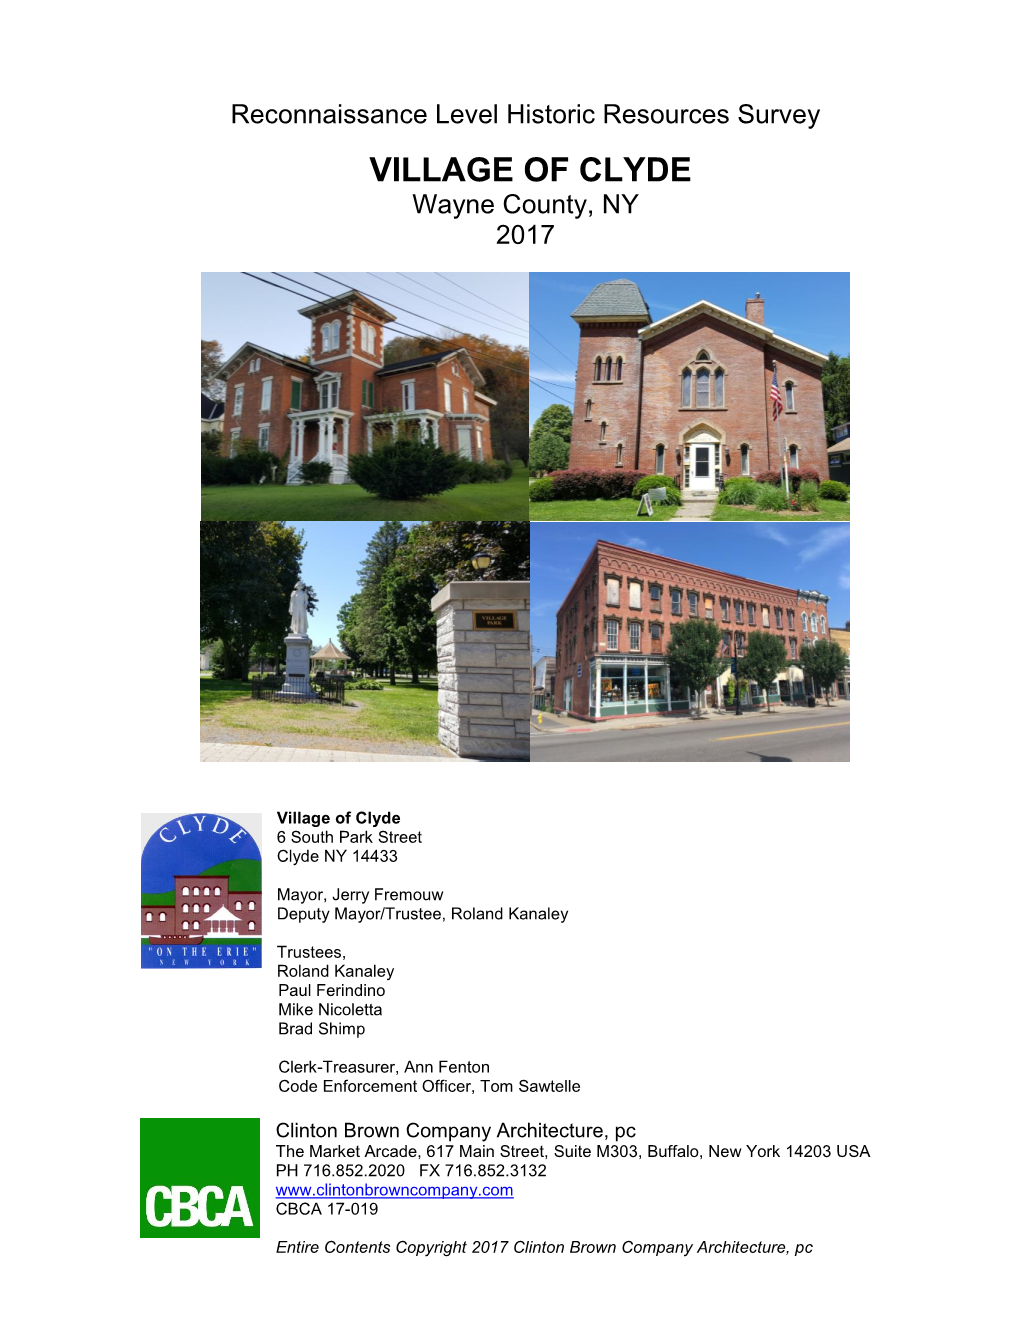 VILLAGE of CLYDE Wayne County, NY 2017